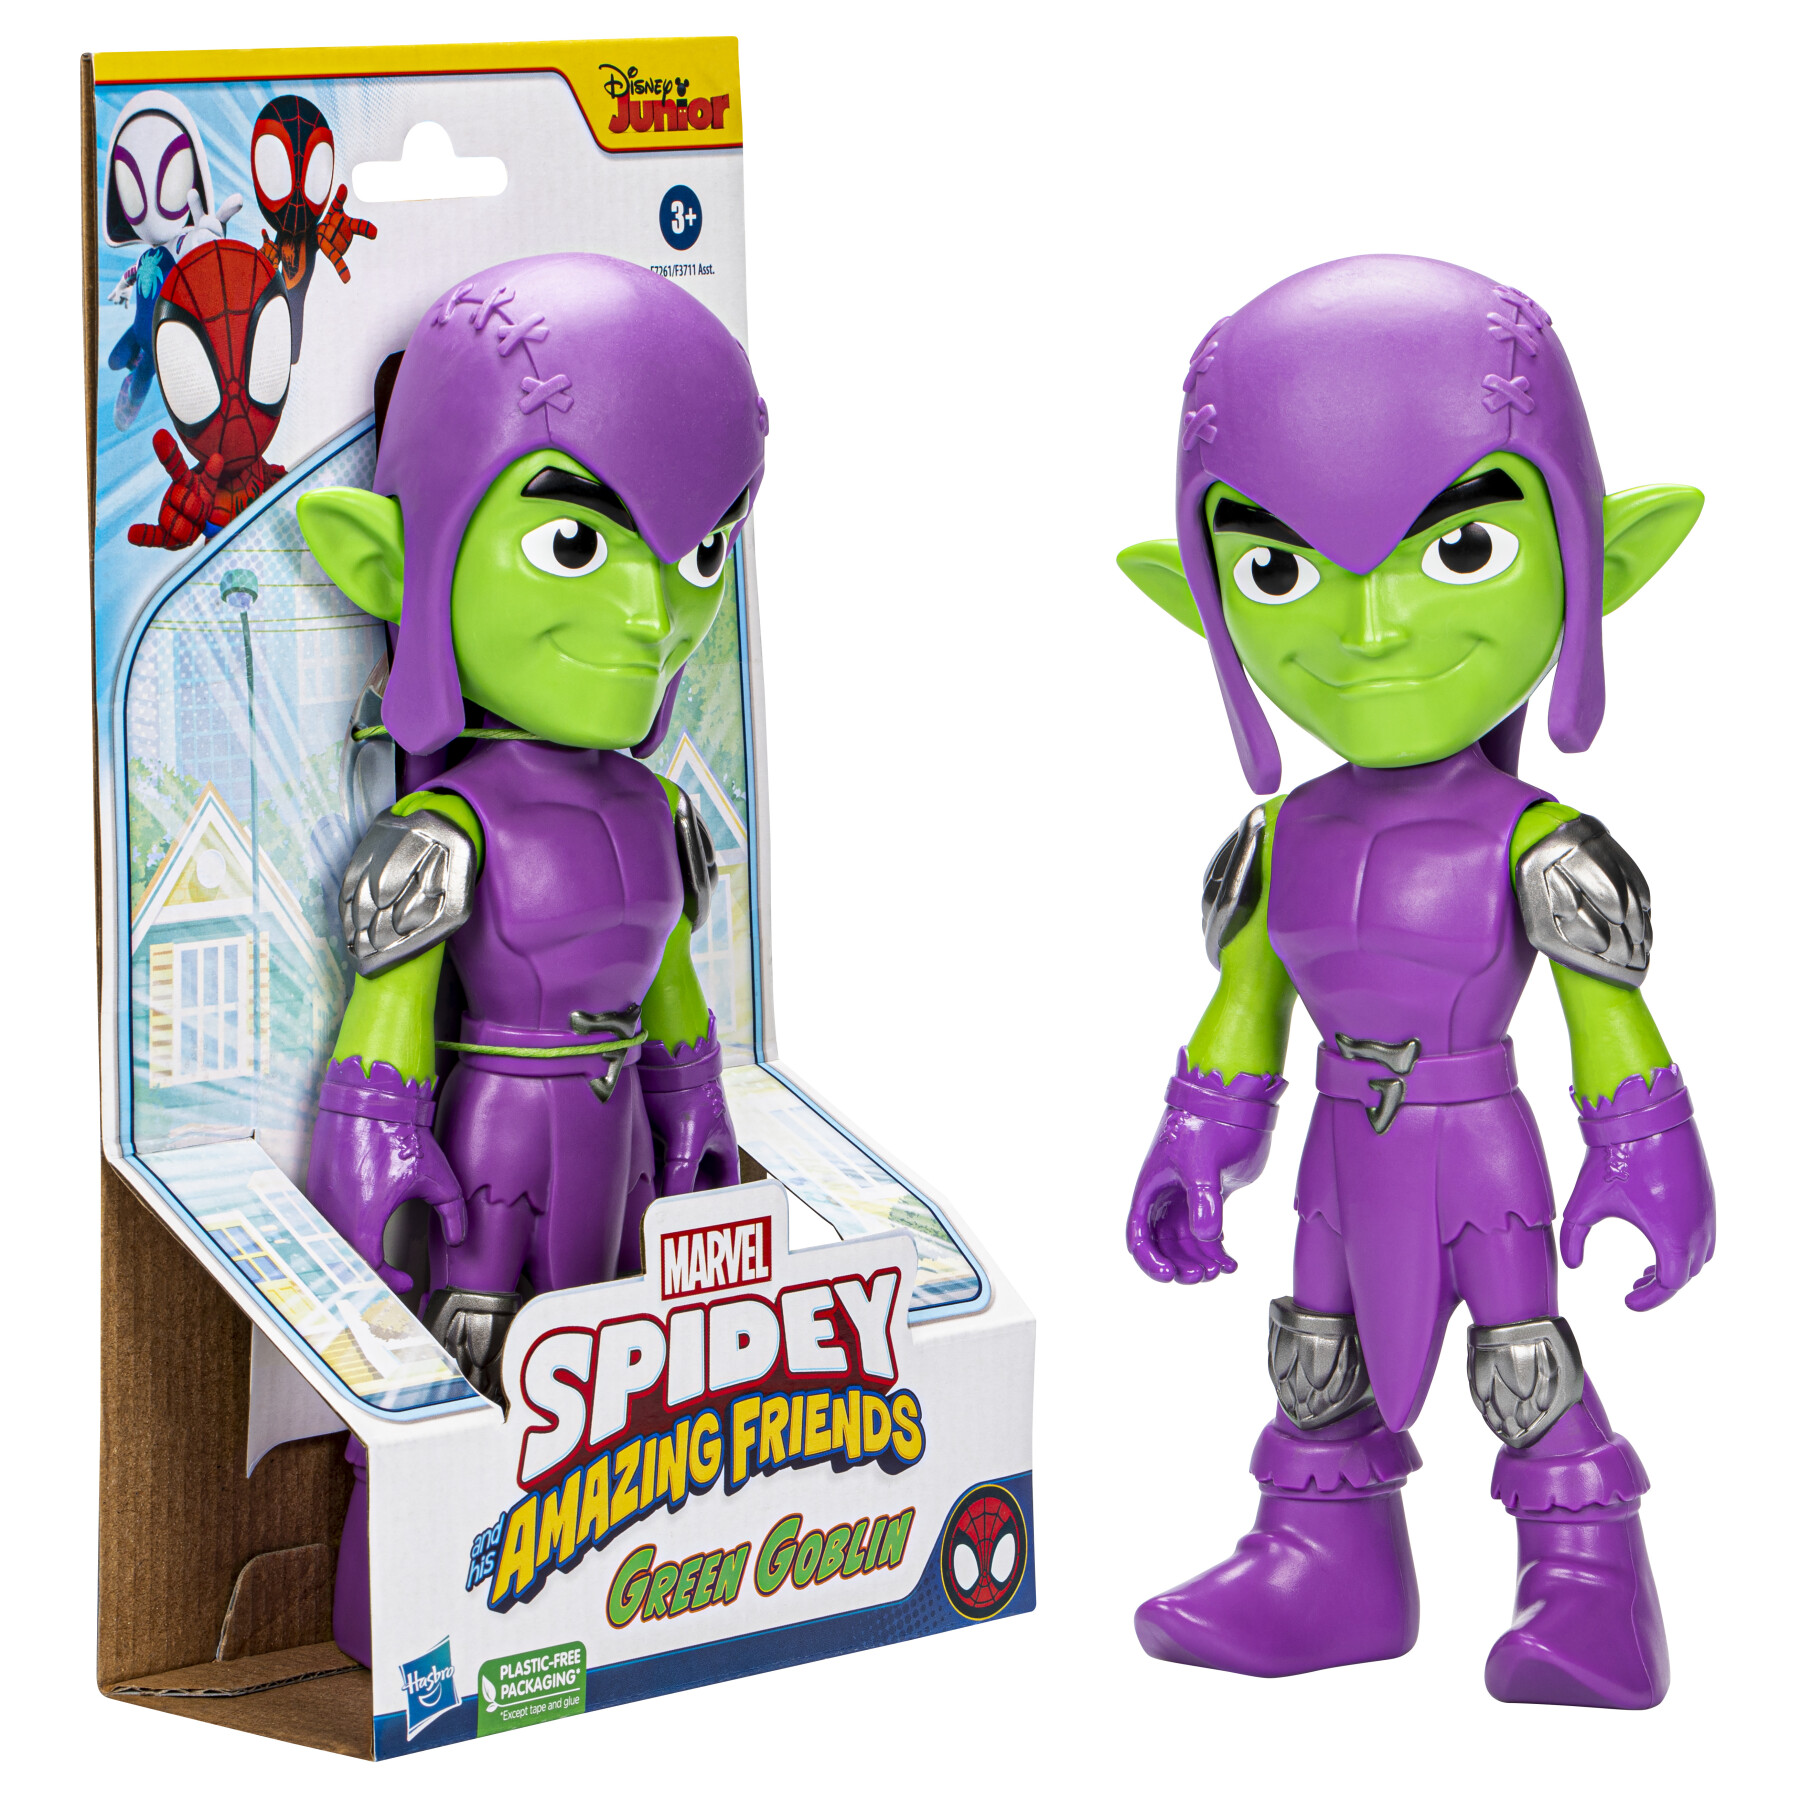 Hasbro marvel spidey e i suoi fantastici amici, action figure di green goblin di grandi dimensioni, giocattoli per età prescolare - SPIDEY, MARVEL